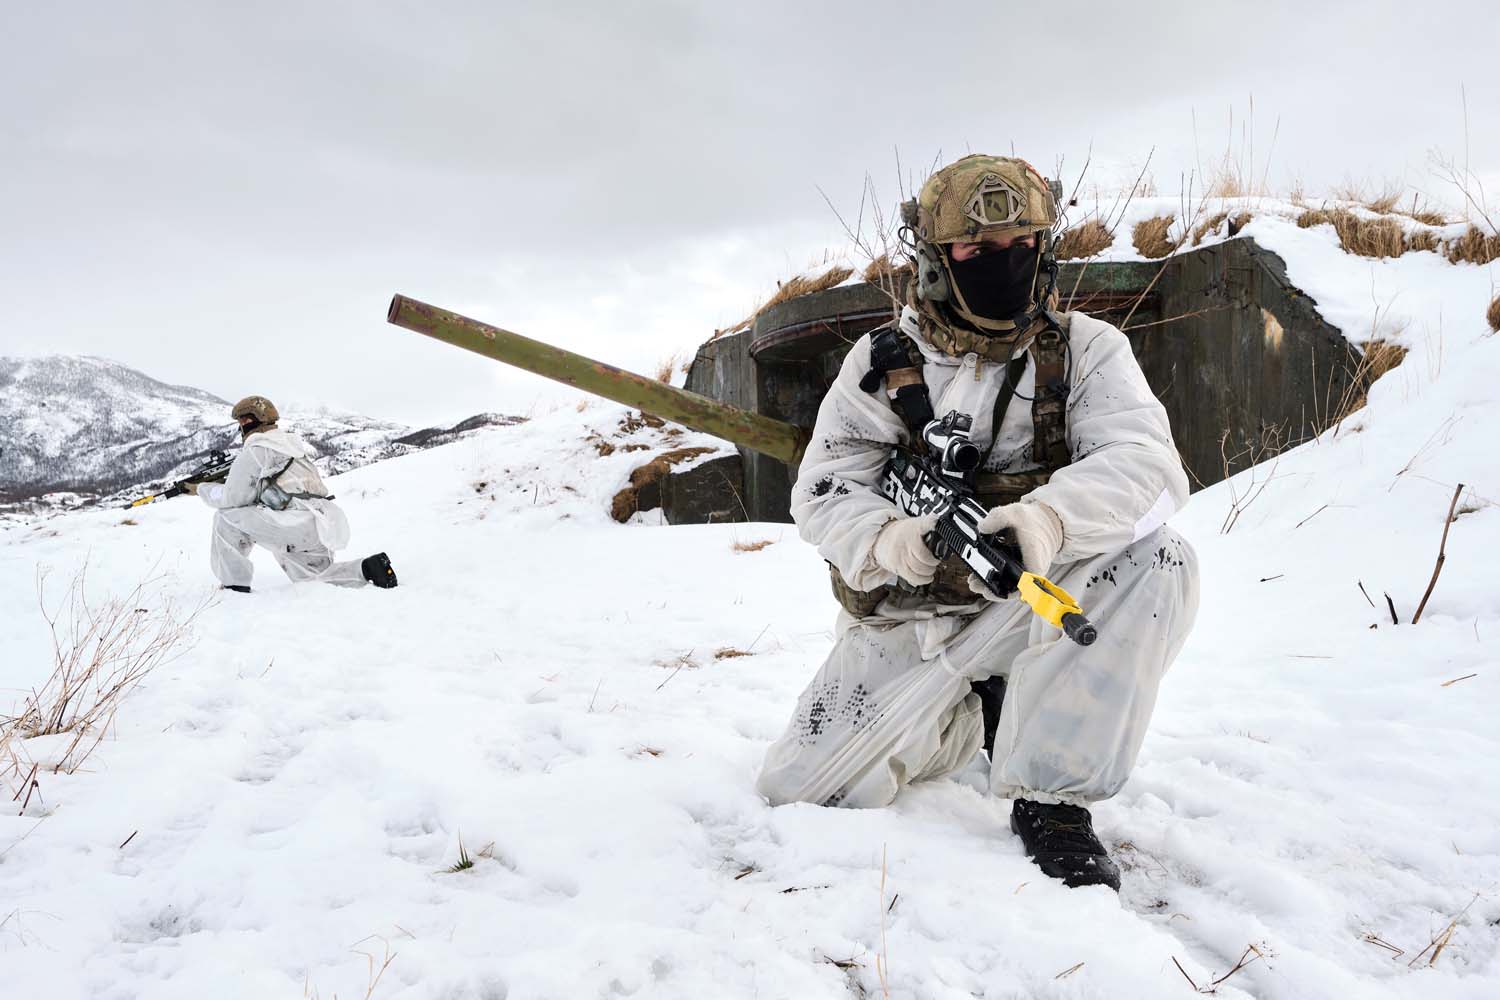 Σπάει την ουδετερότητα ο νορβηγικός στρατός: Στρατιωτική βάση ανοίγει η Βρετανία στη βόρεια Νορβηγία